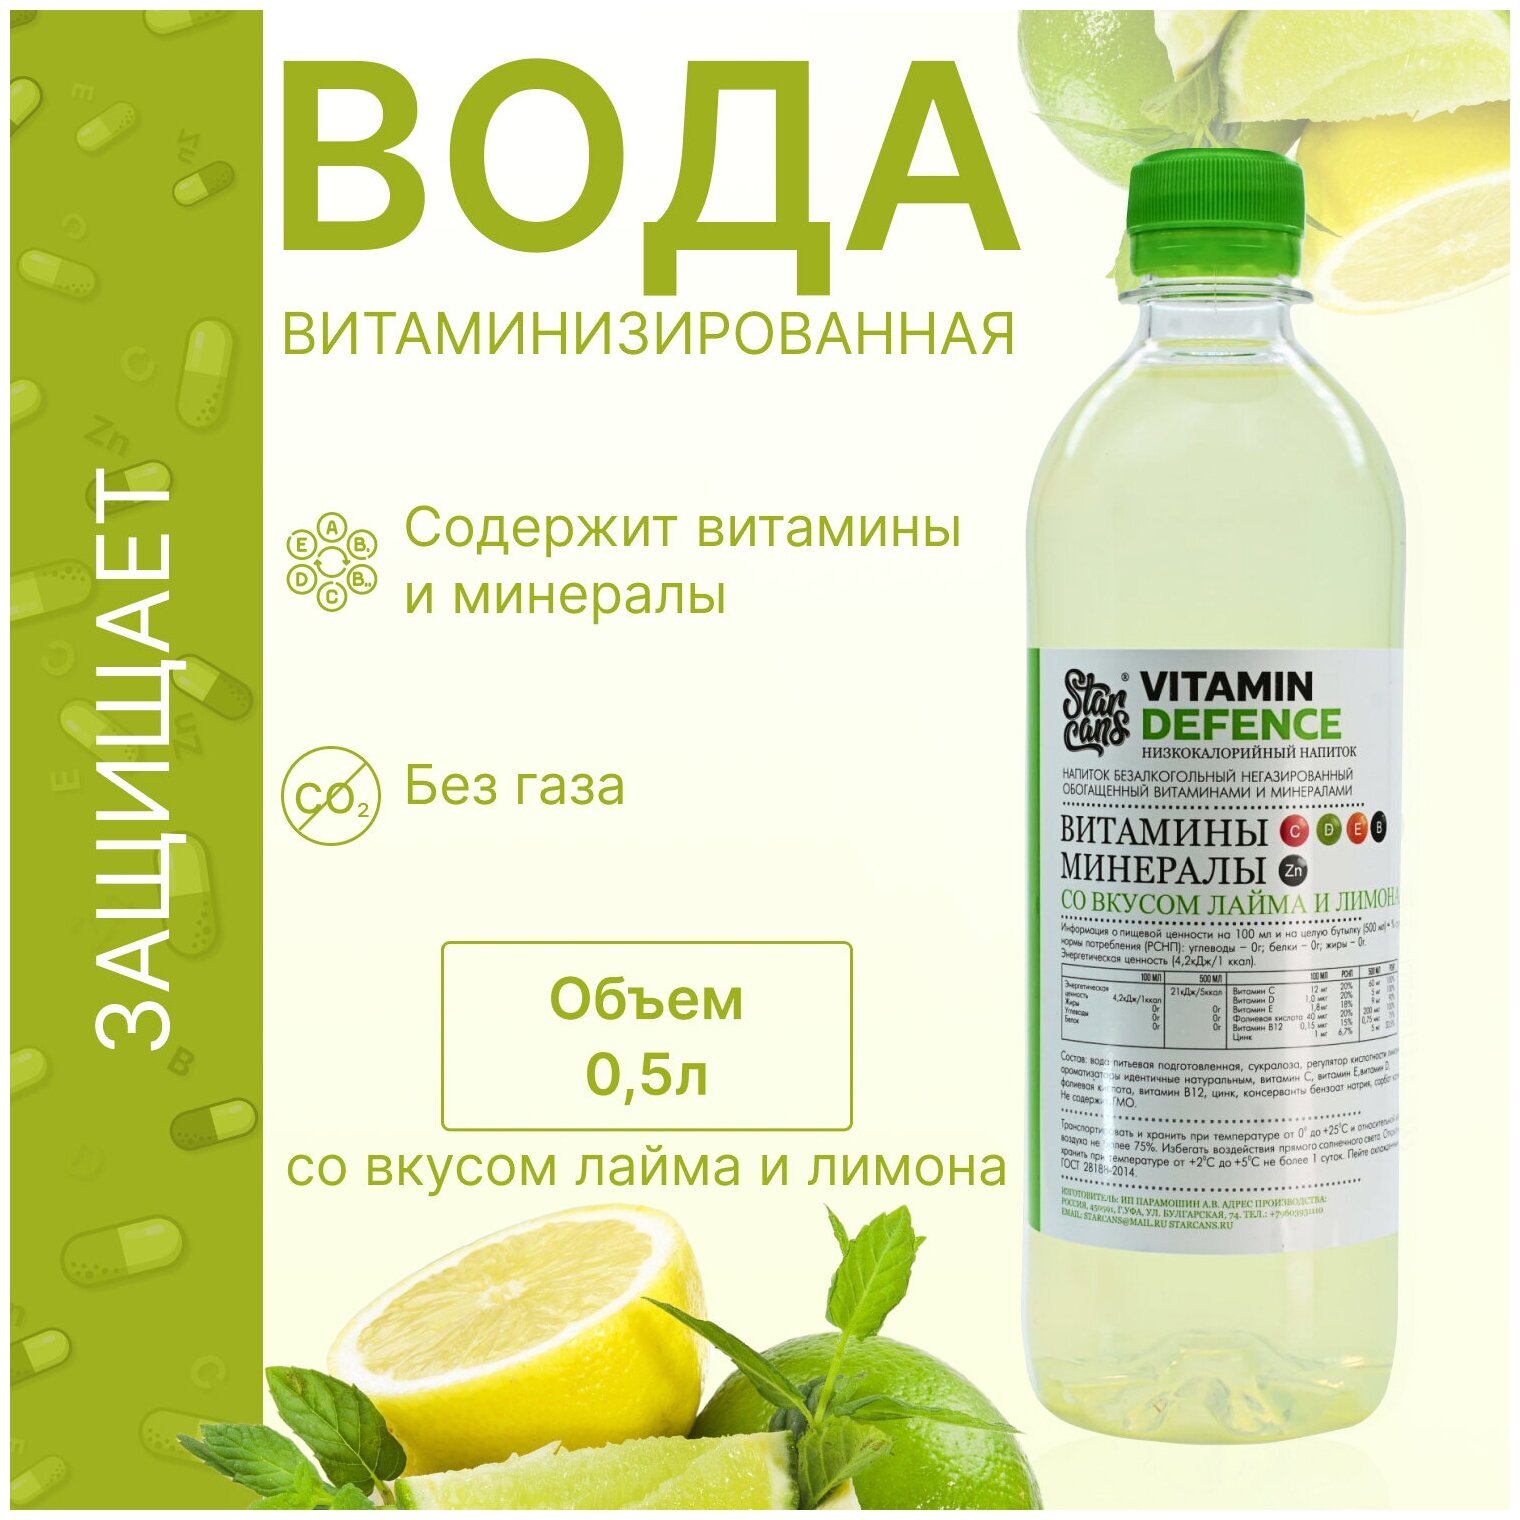 Vitamin DEFENCE Напиток витаминизированный со вкусом Лайма и Лимона негазированный низкокалорийный 12 шт по 500 мл